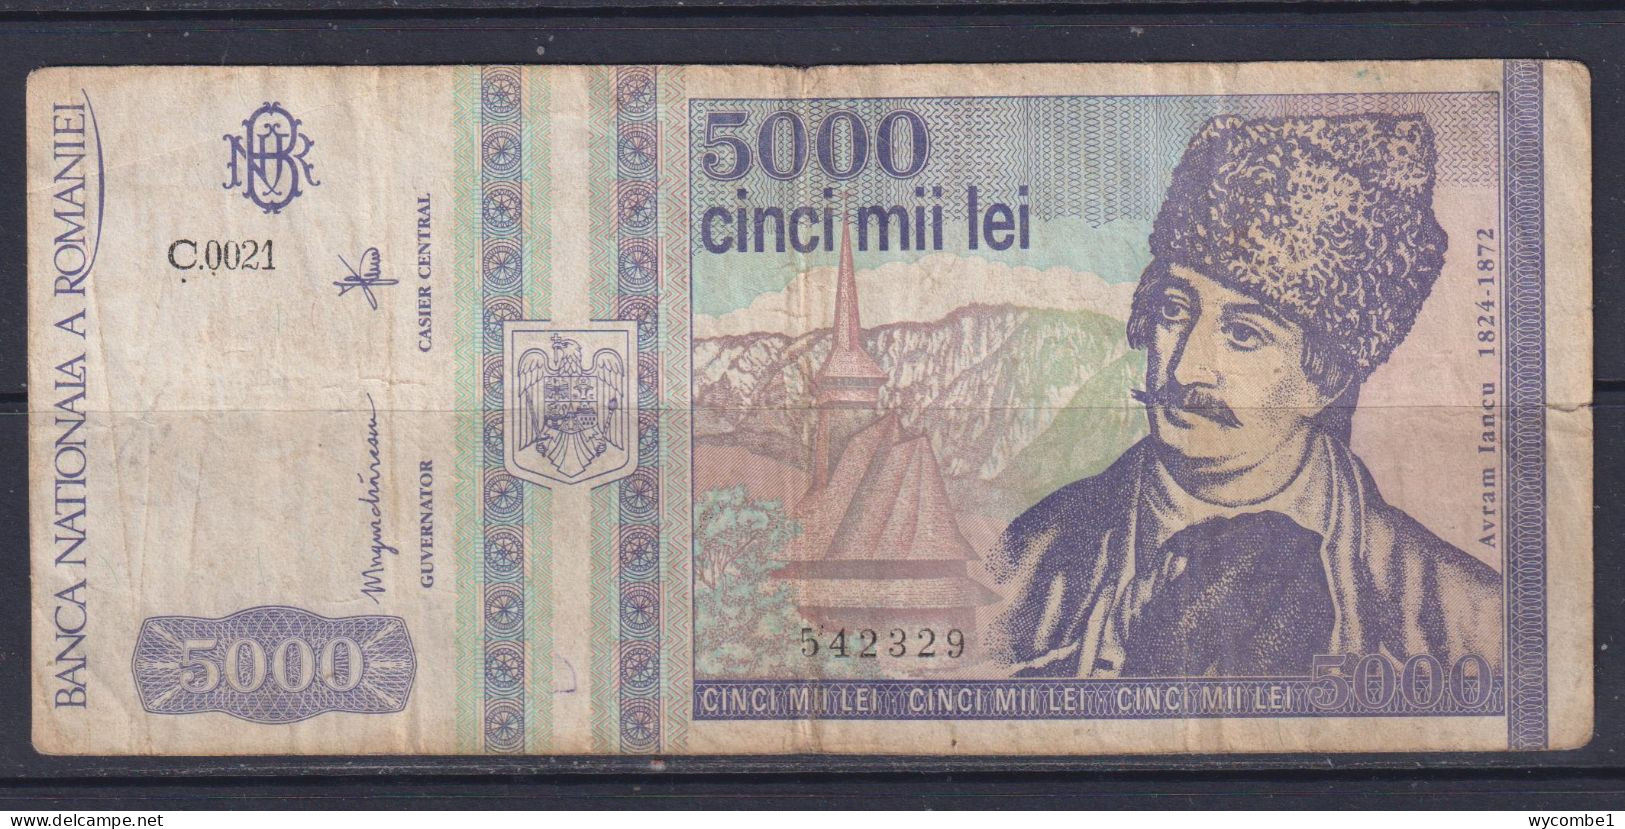 ROMANIA - 1993 5000 Lei Circulated Banknote - Roumanie